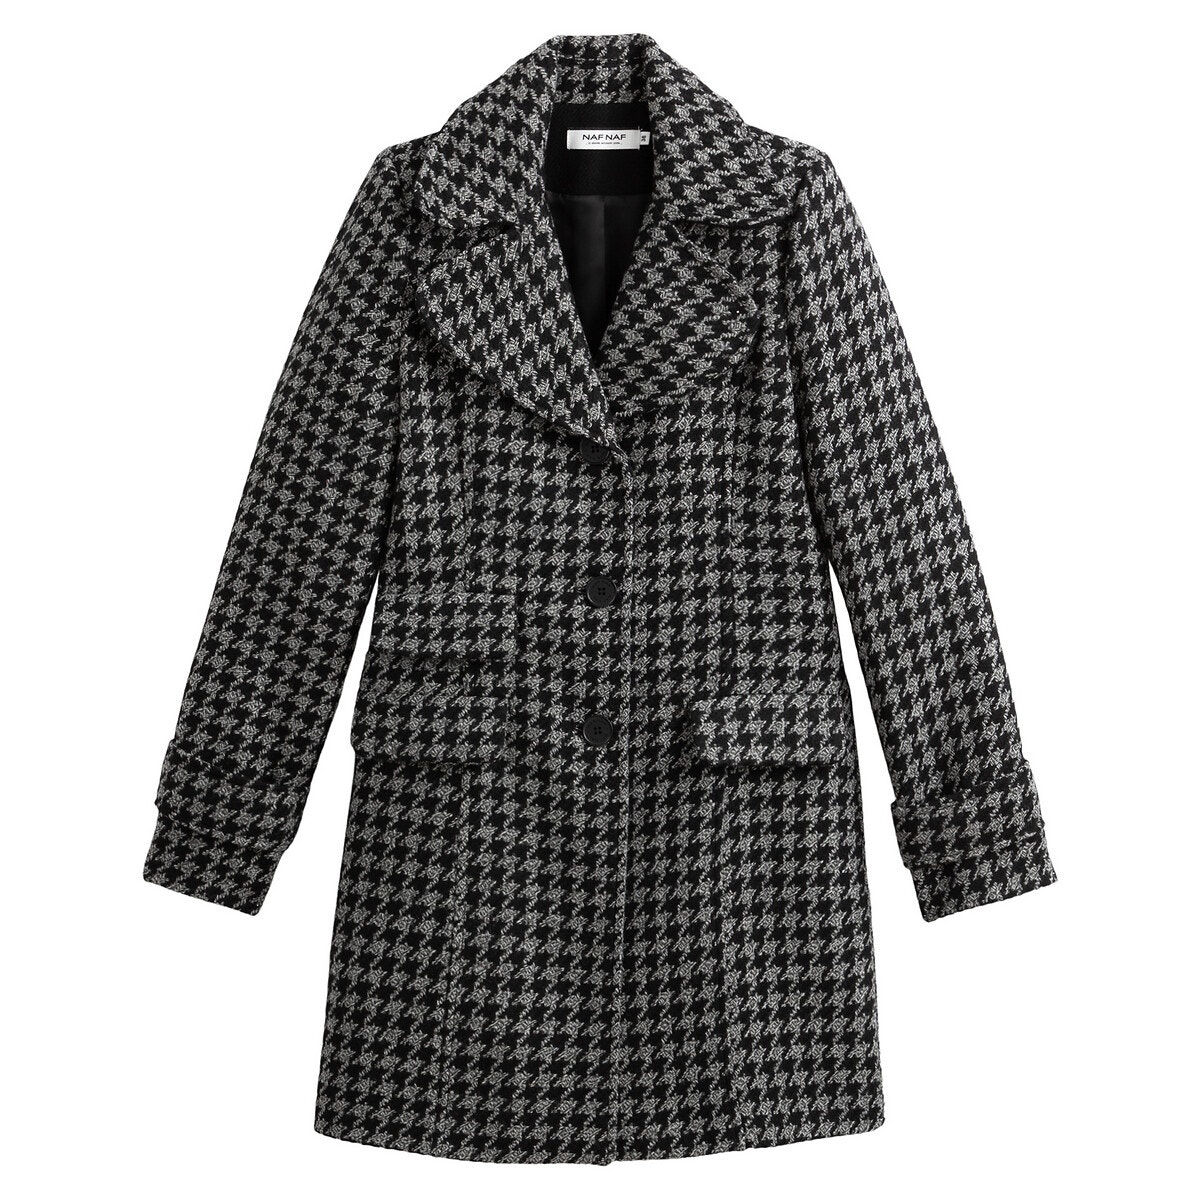 Μακρύ παλτό με μοτίβο πιε-ντε-πουλ ΓΥΝΑΙΚΑ | Πανωφόρια | Παλτό